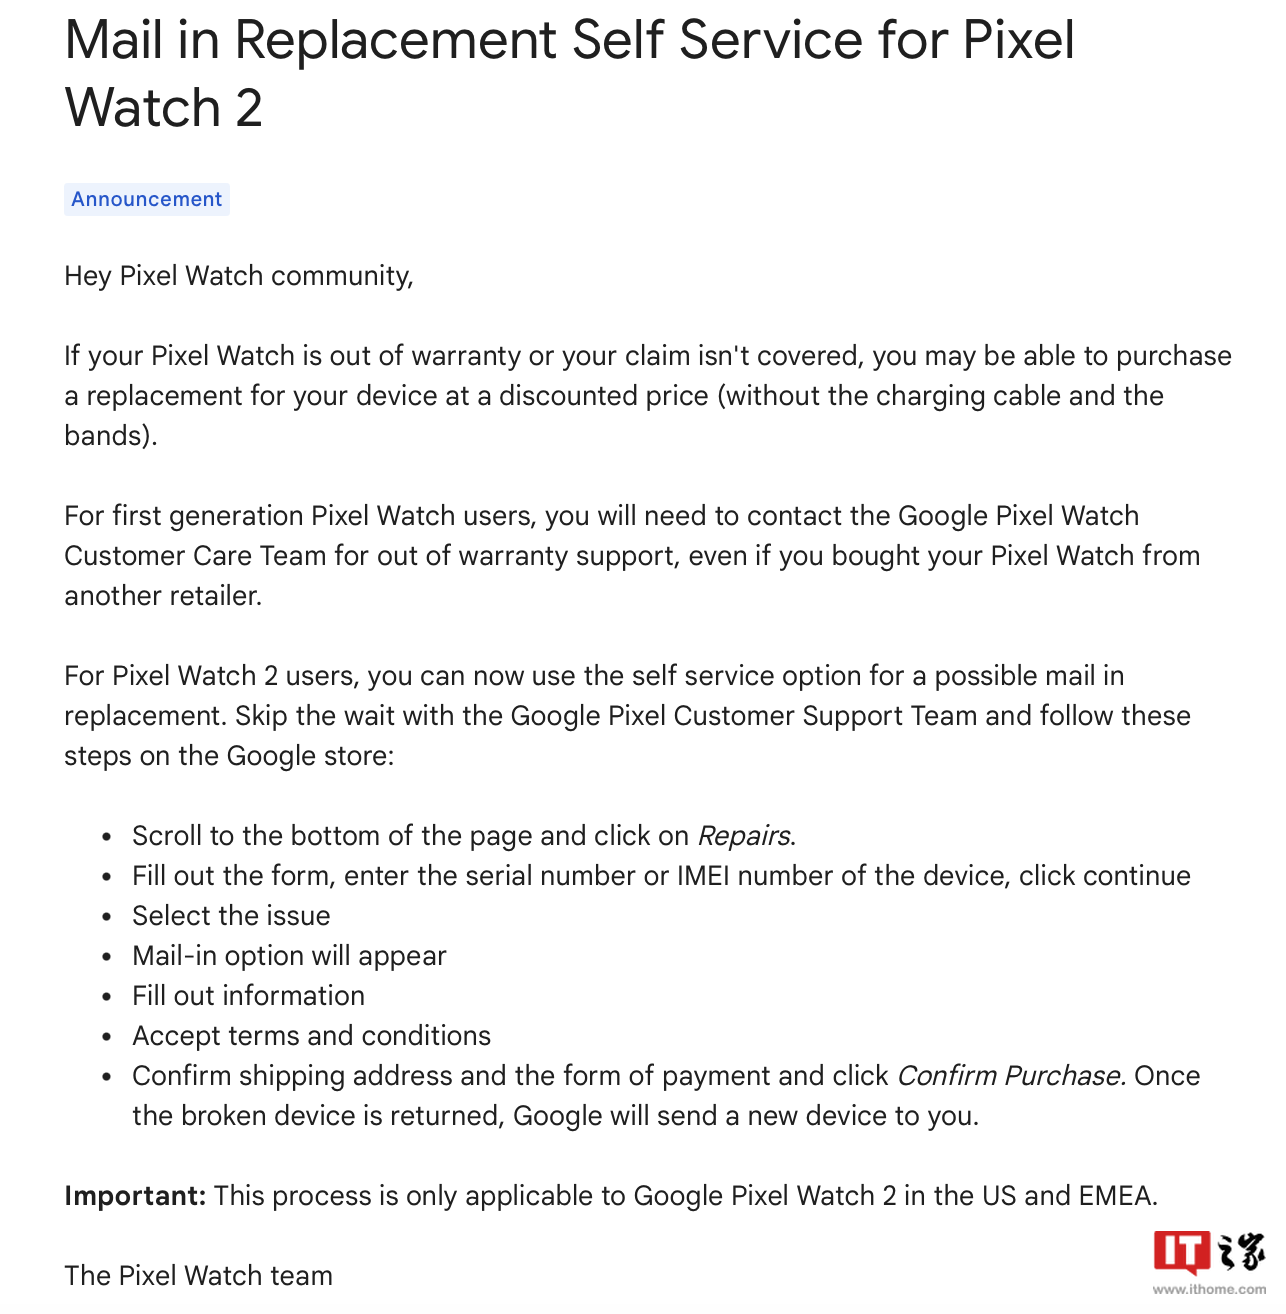 谷歌调整 Pixel Watch 1/2 手表保修政策：改善自助邮寄换修流程、支持折抵换新